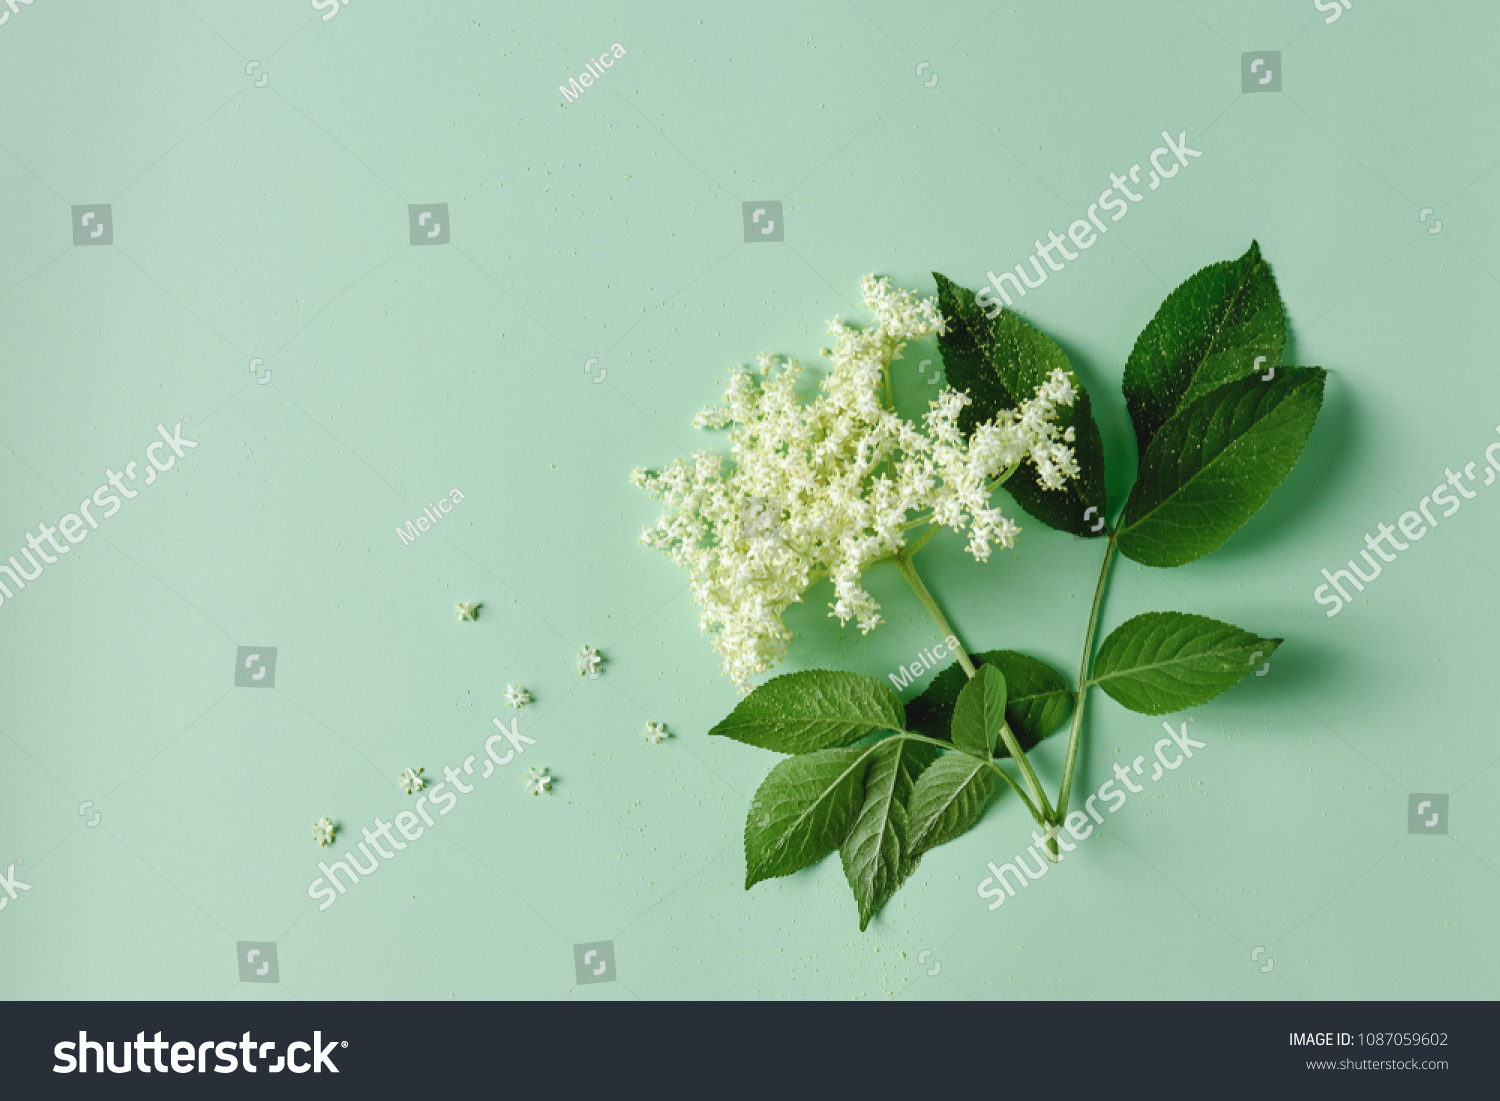 Elderflower blossom flower with leaves on light green background.  #1087059602